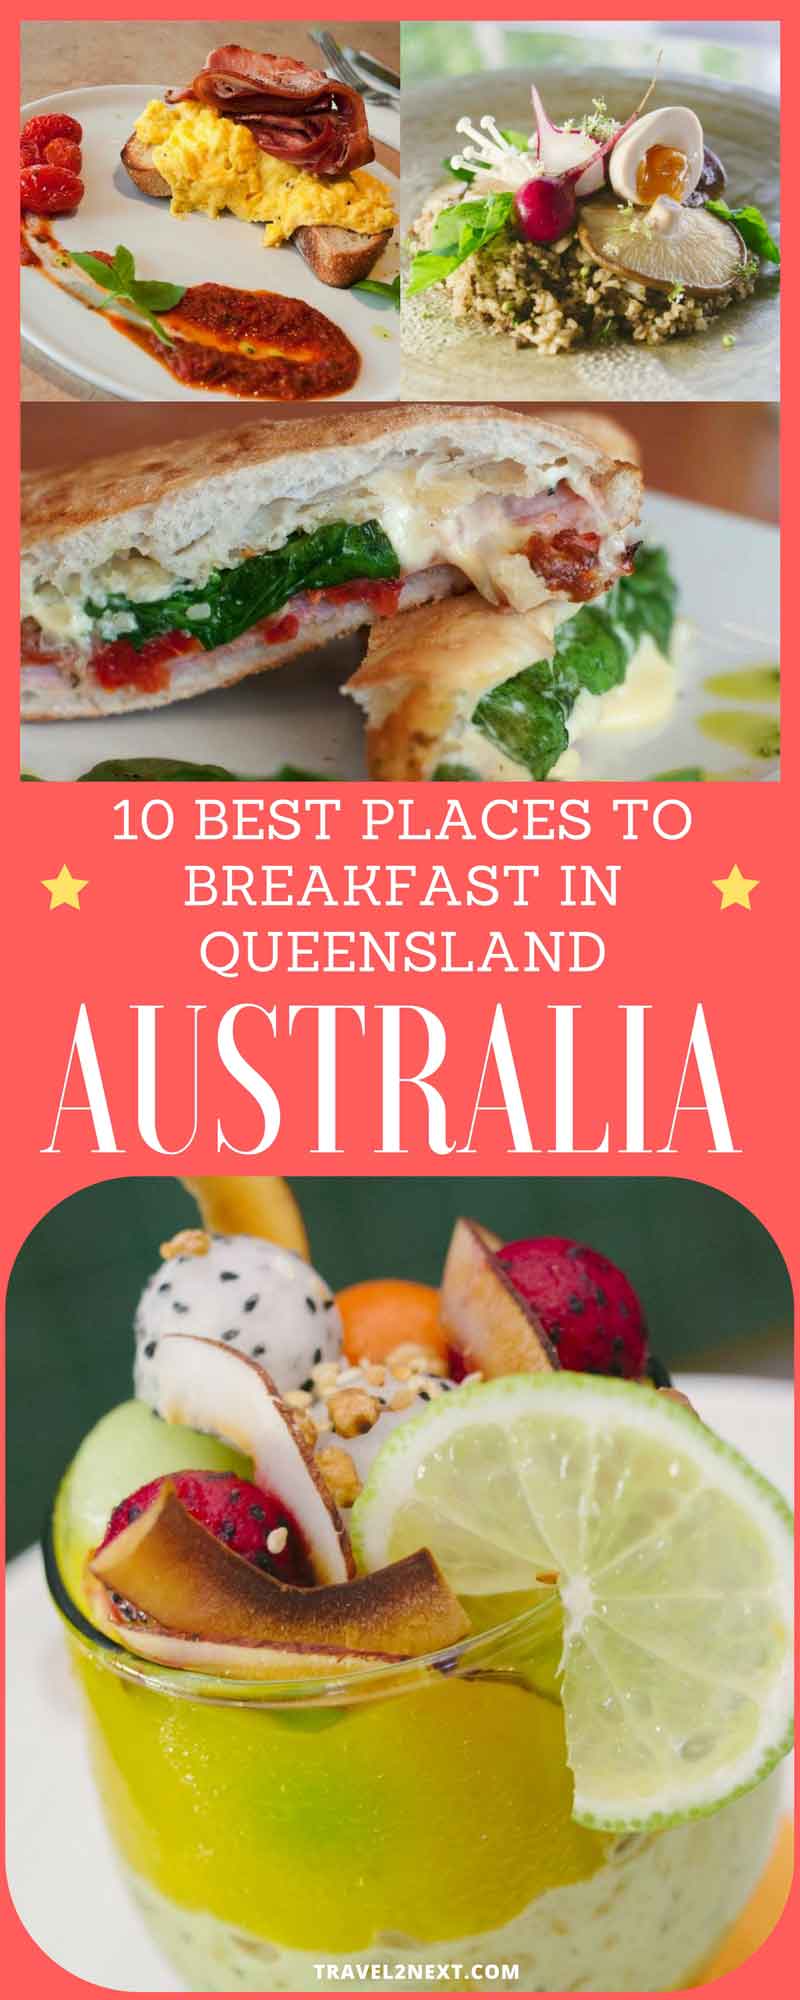 10 best places to breakfast in Queensland